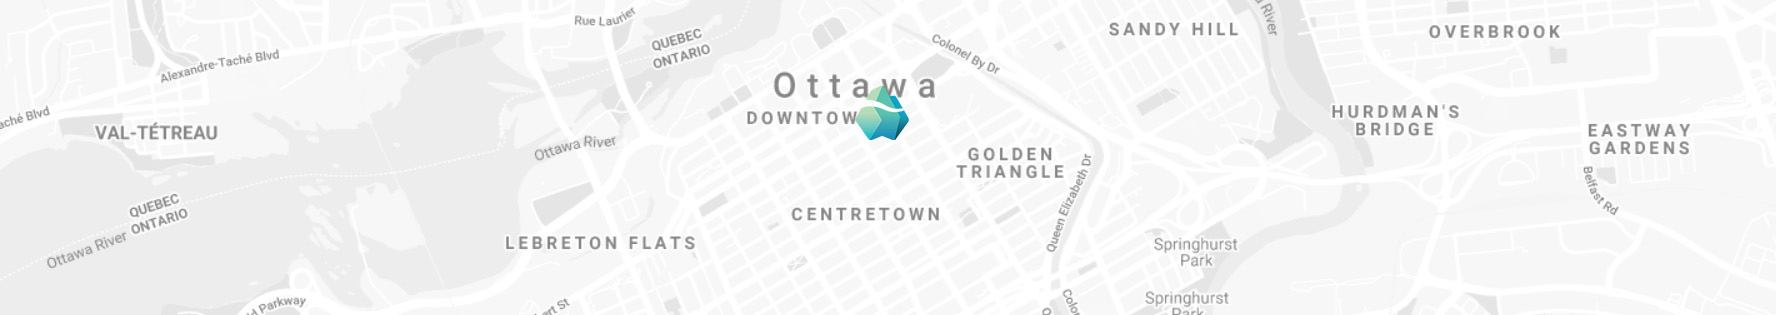 Map of downtown Ottawa